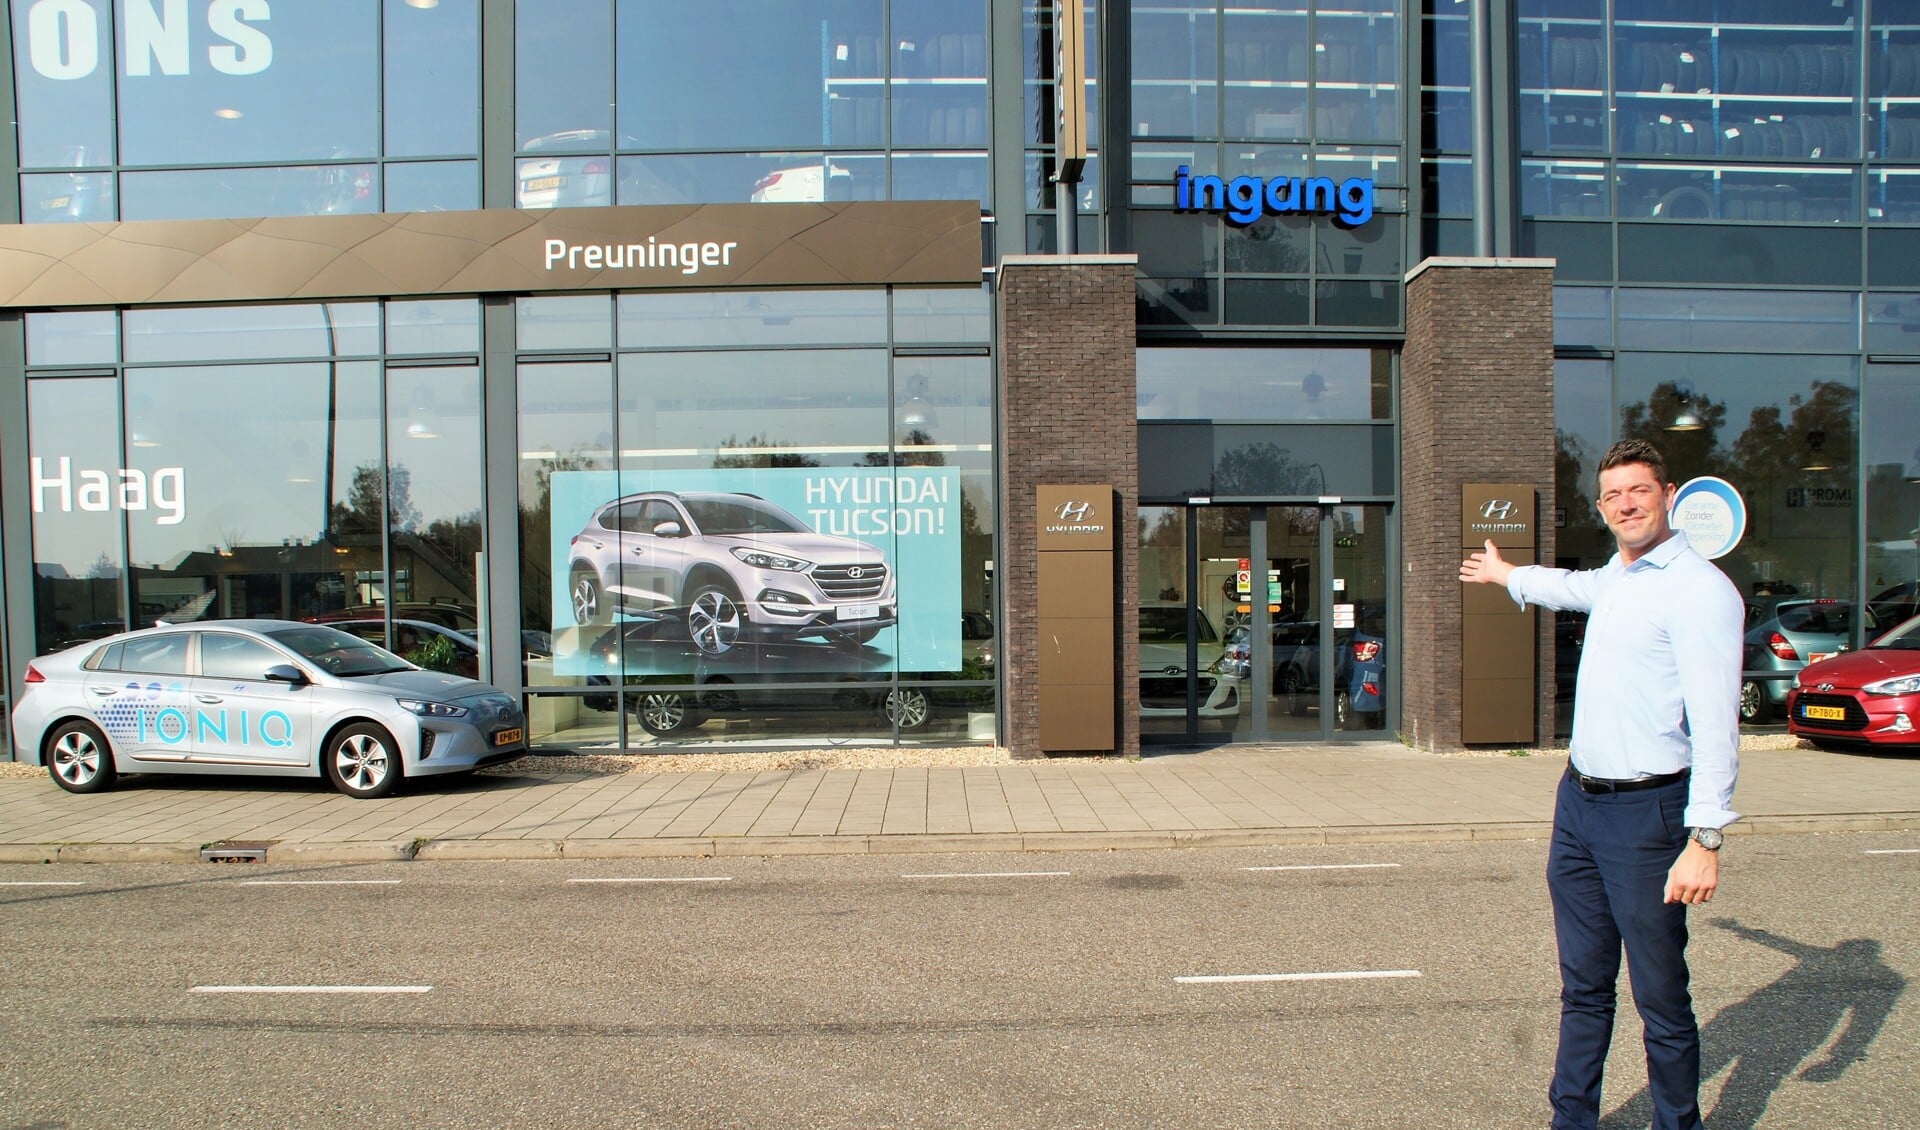 Verkoper Martijn van Reenen voor het niet te missen pand van Preuninger Hyundai in Ypenburg. (foto's: ML)